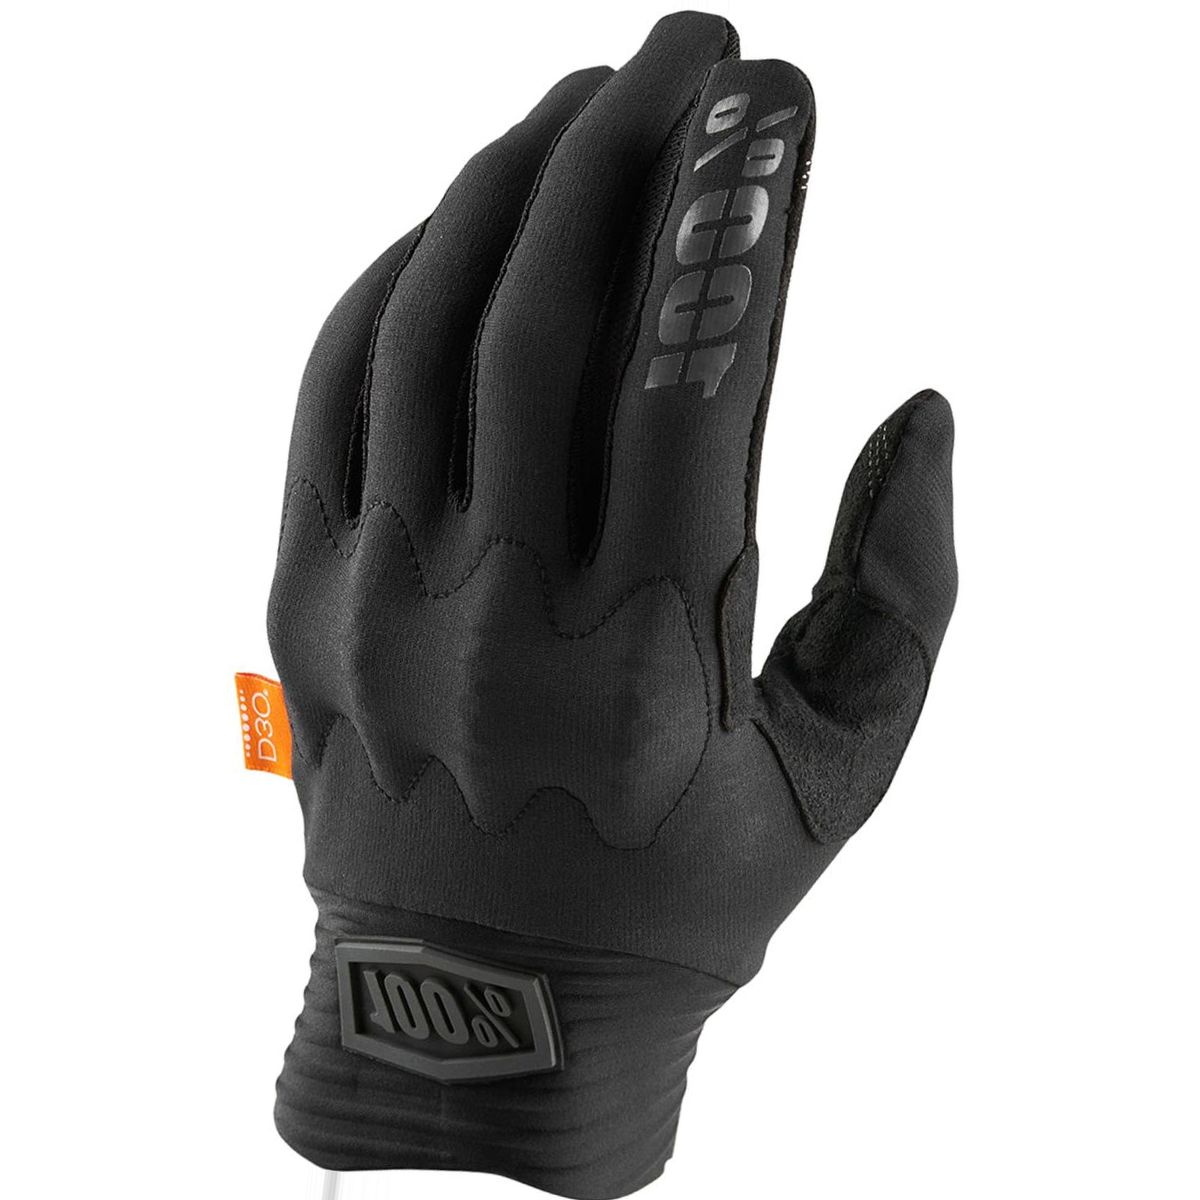 100% Cognito D30 Glove - Men's